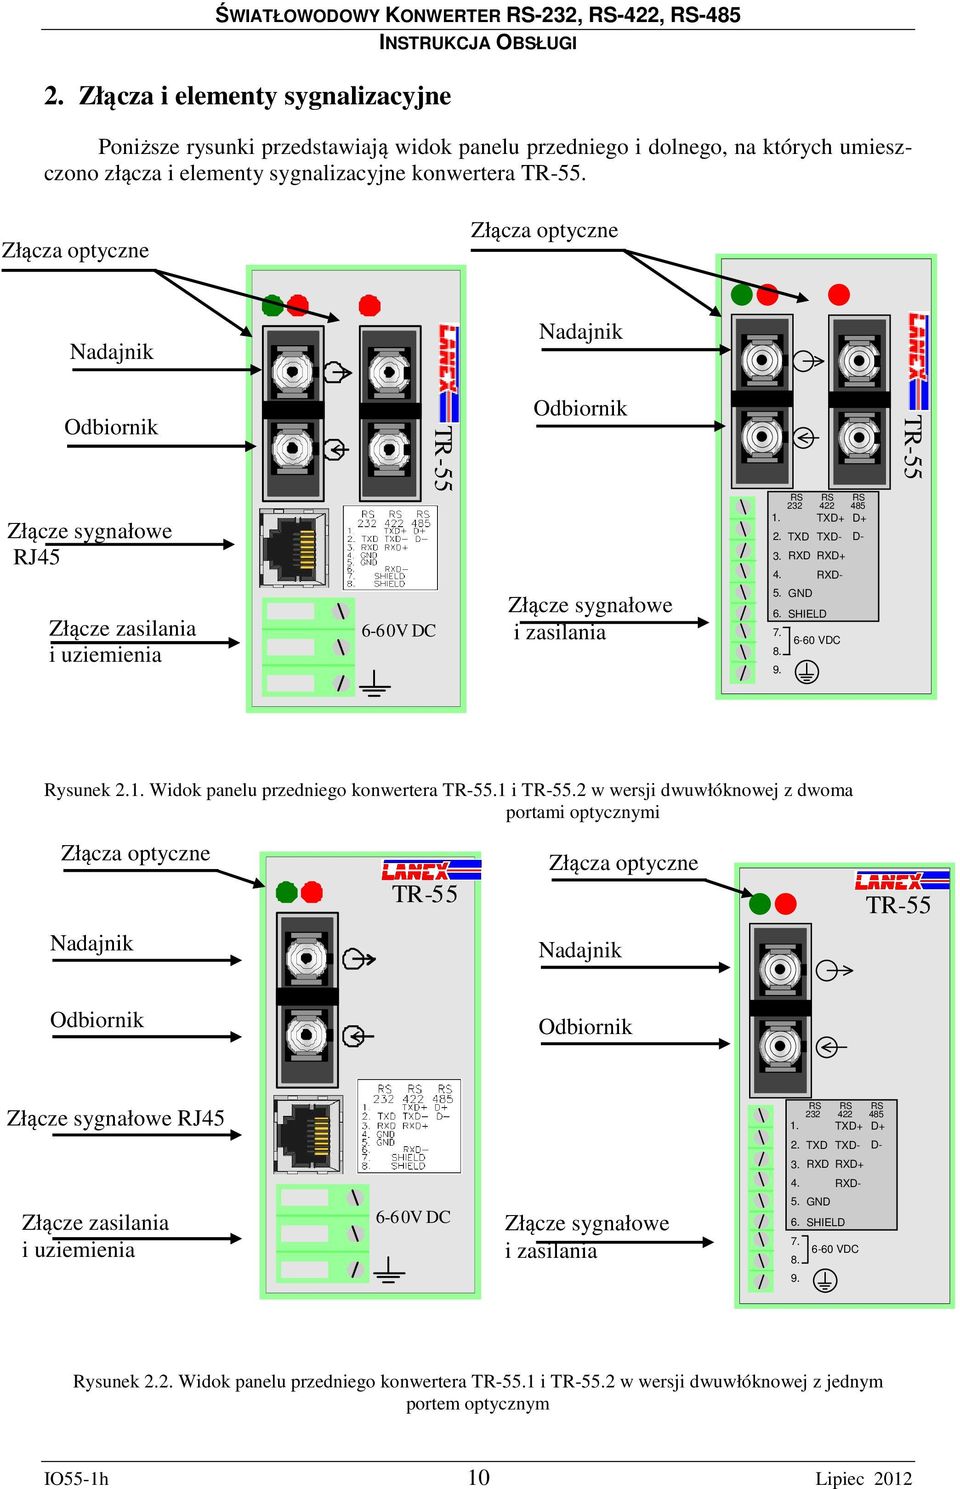 RXD- Złącze zasilania i uziemienia 6-60V DC Złącze sygnałowe i zasilania 5. GND 6. SHIELD 7. 8. 9. 6-60 VDC Rysunek 2.1. Widok panelu przedniego konwertera.1 i.